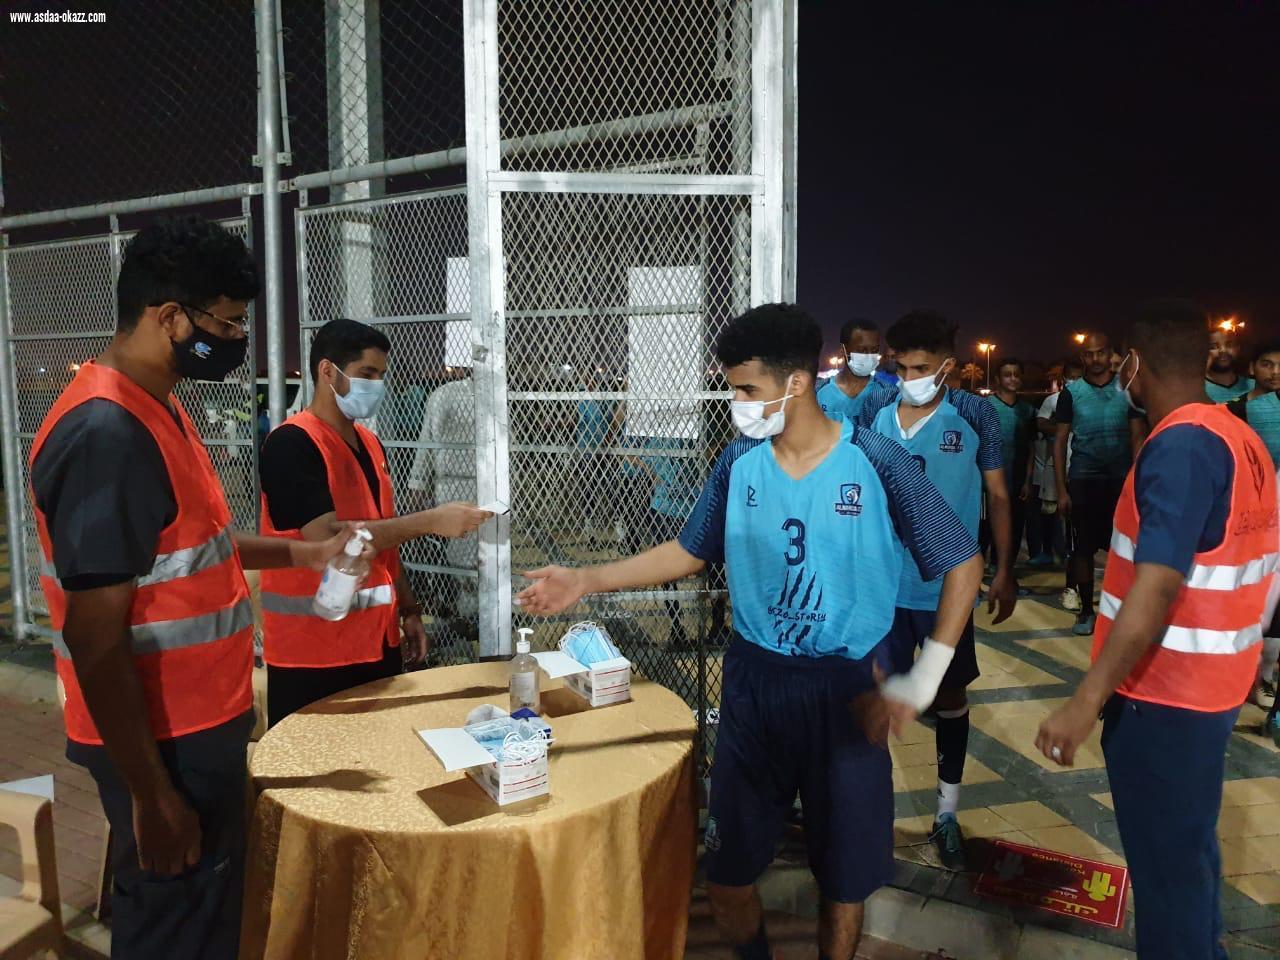 24 فريقًا يشاركون في بطولة كرة القدم بملتقى أبوعريش الاجتماعي 